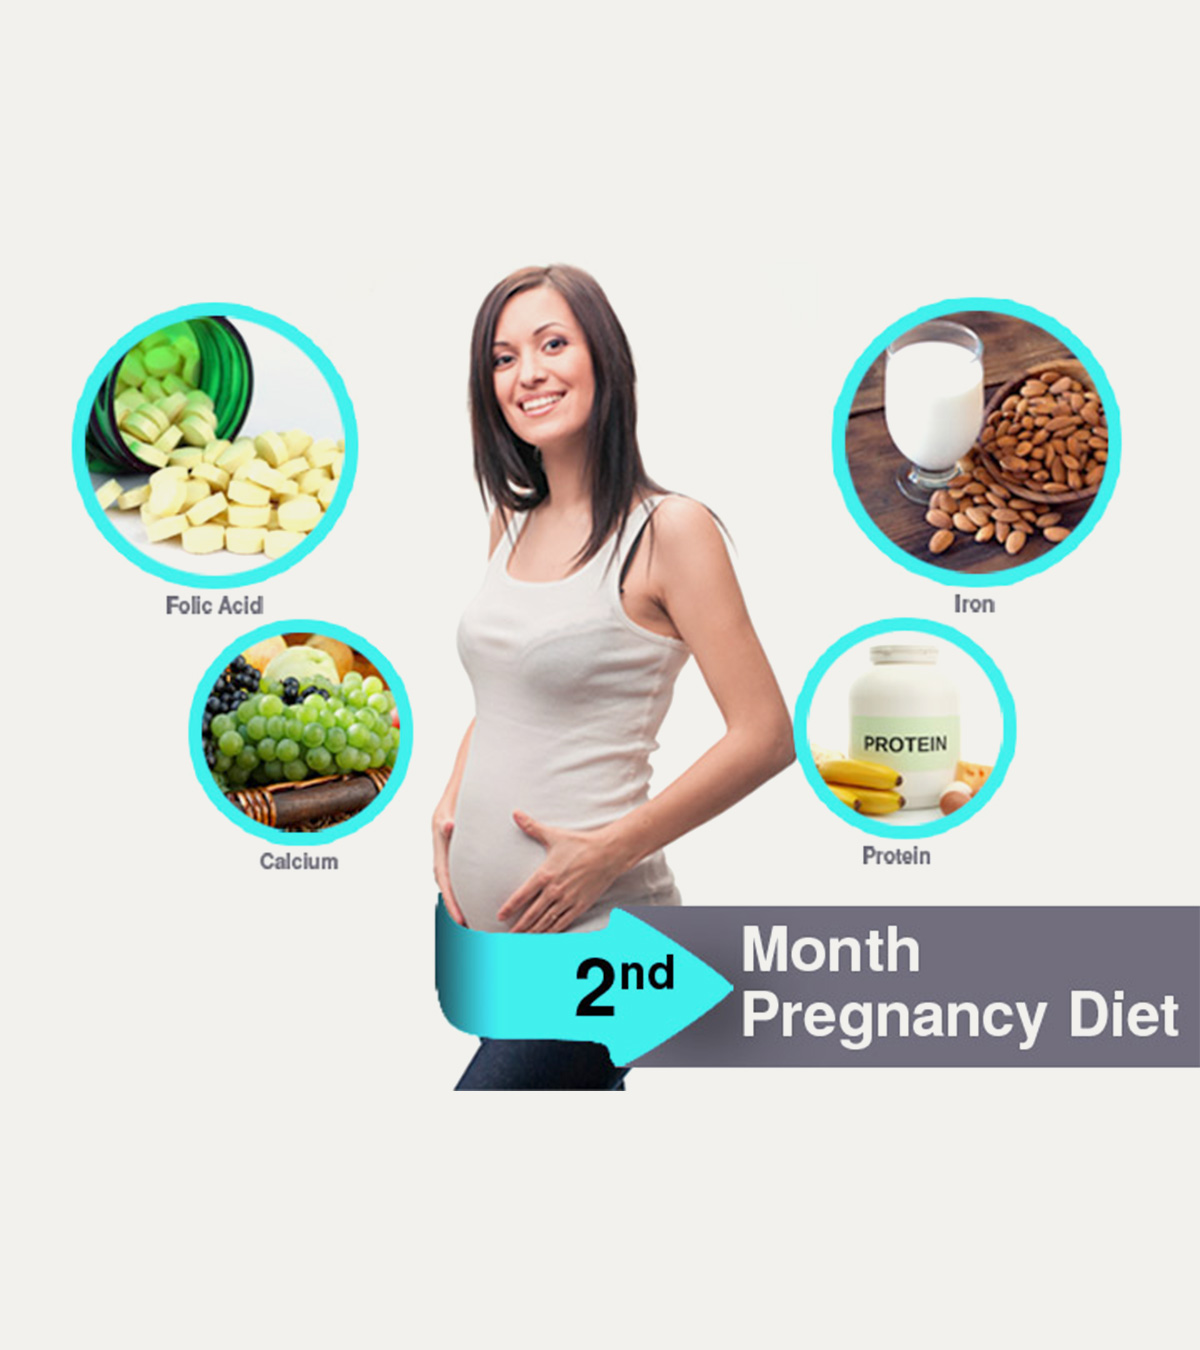 怀孕第2个月的饮食:吃什么和避免什么?